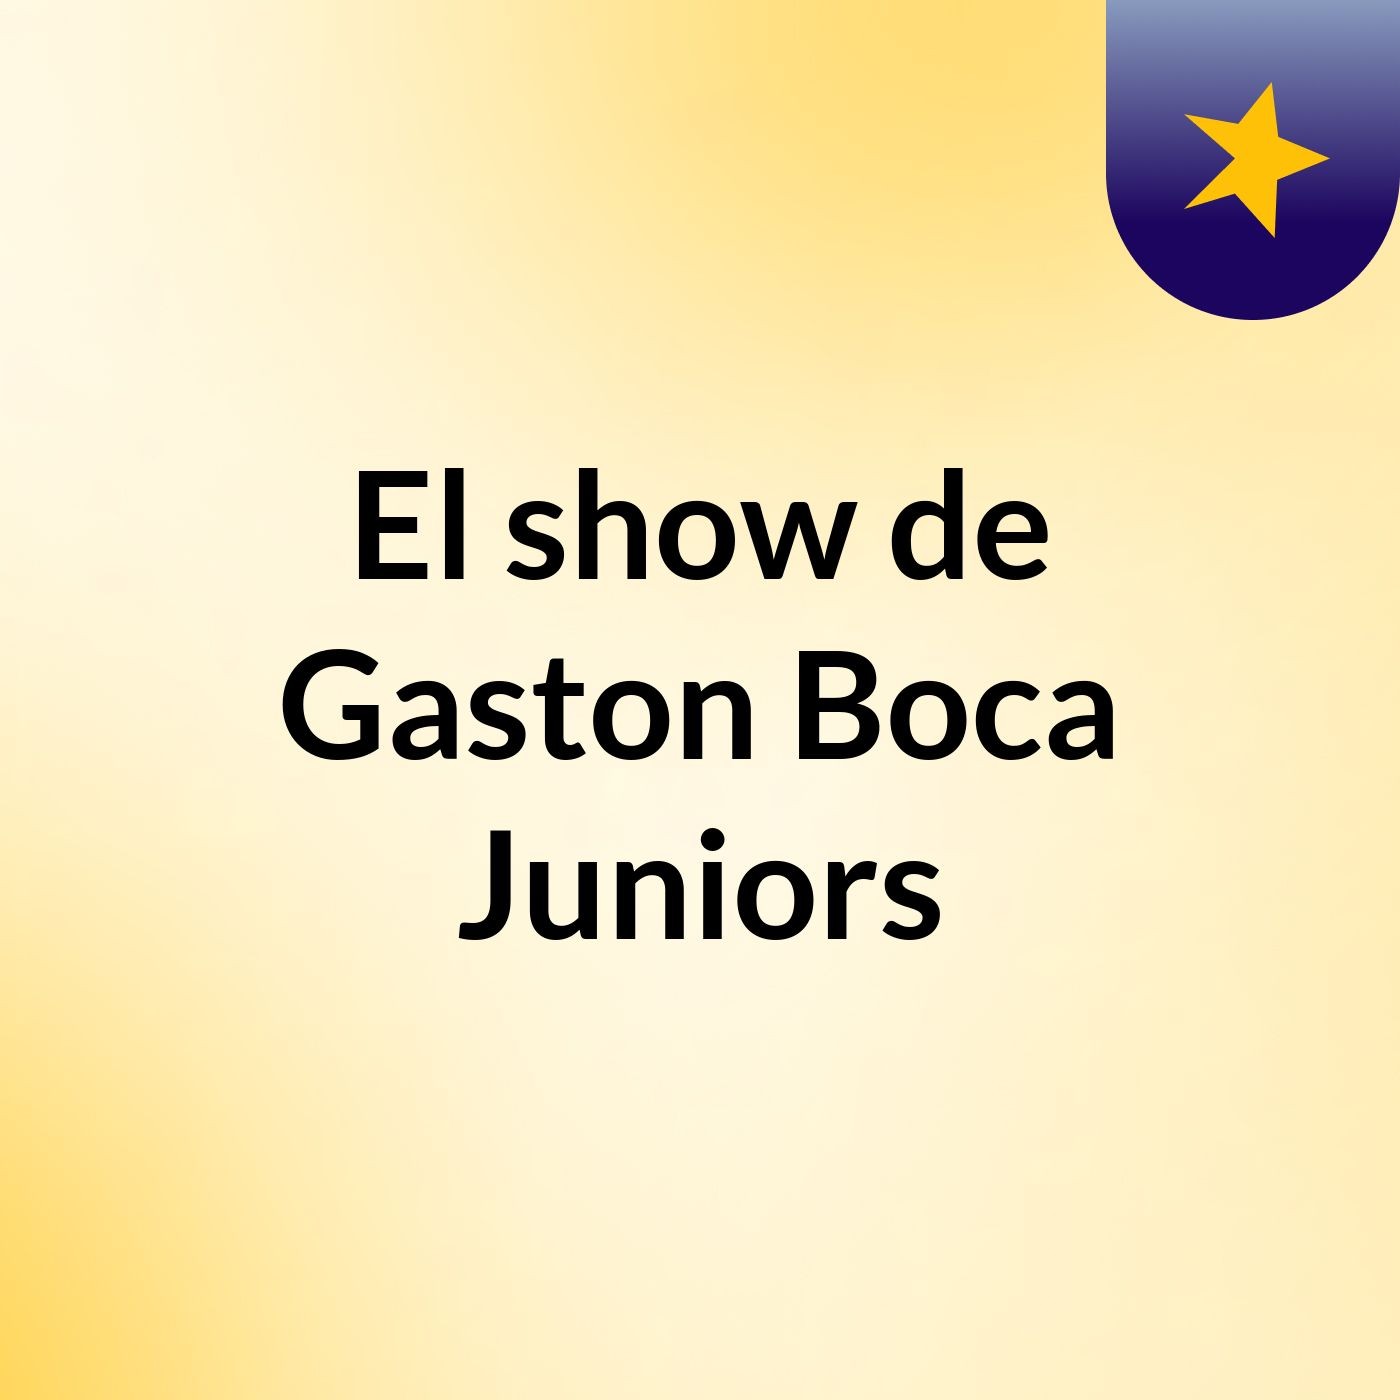 El show de Gaston Boca Juniors